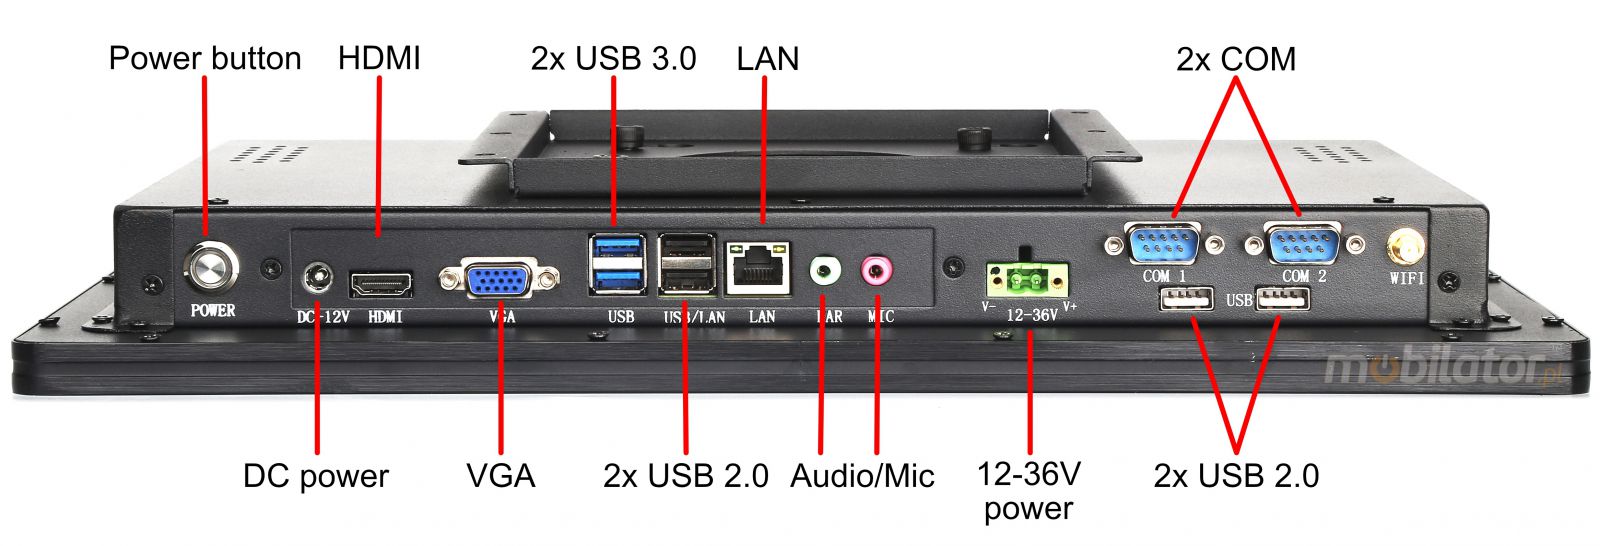 BiBOX-185PC1 (J1900) v.7 - Pancerny panel przemysowy z licencj Windows 10 PRO z norm odpornoci IP65 oraz WiFi z dyskiem 128GB SSD